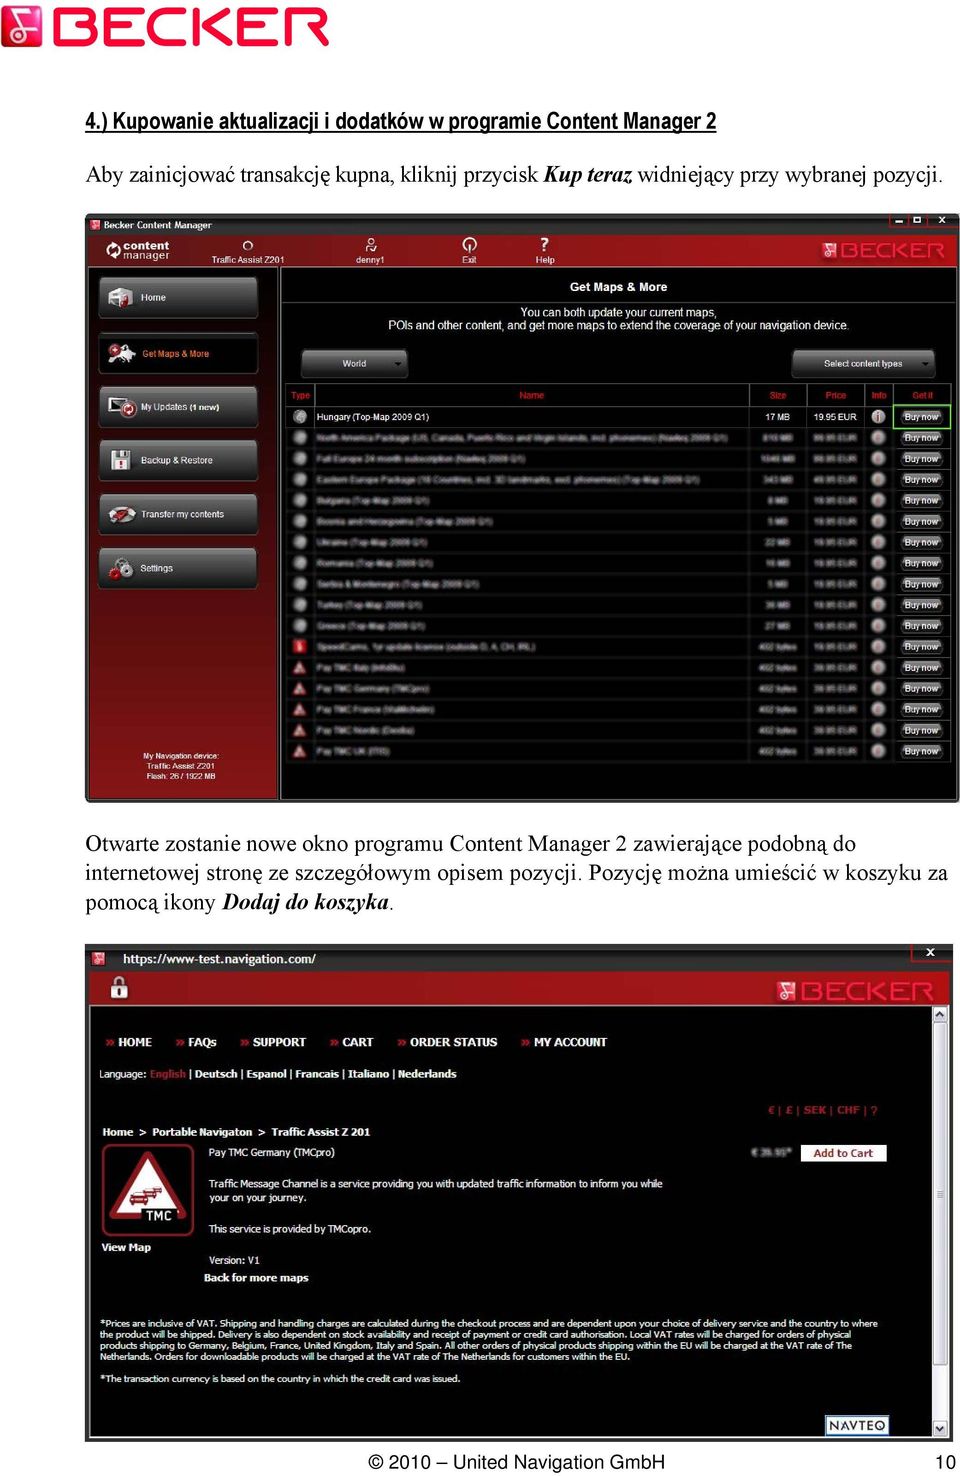 Otwarte zostanie nowe okno programu Content Manager 2 zawierające podobną do internetowej stronę